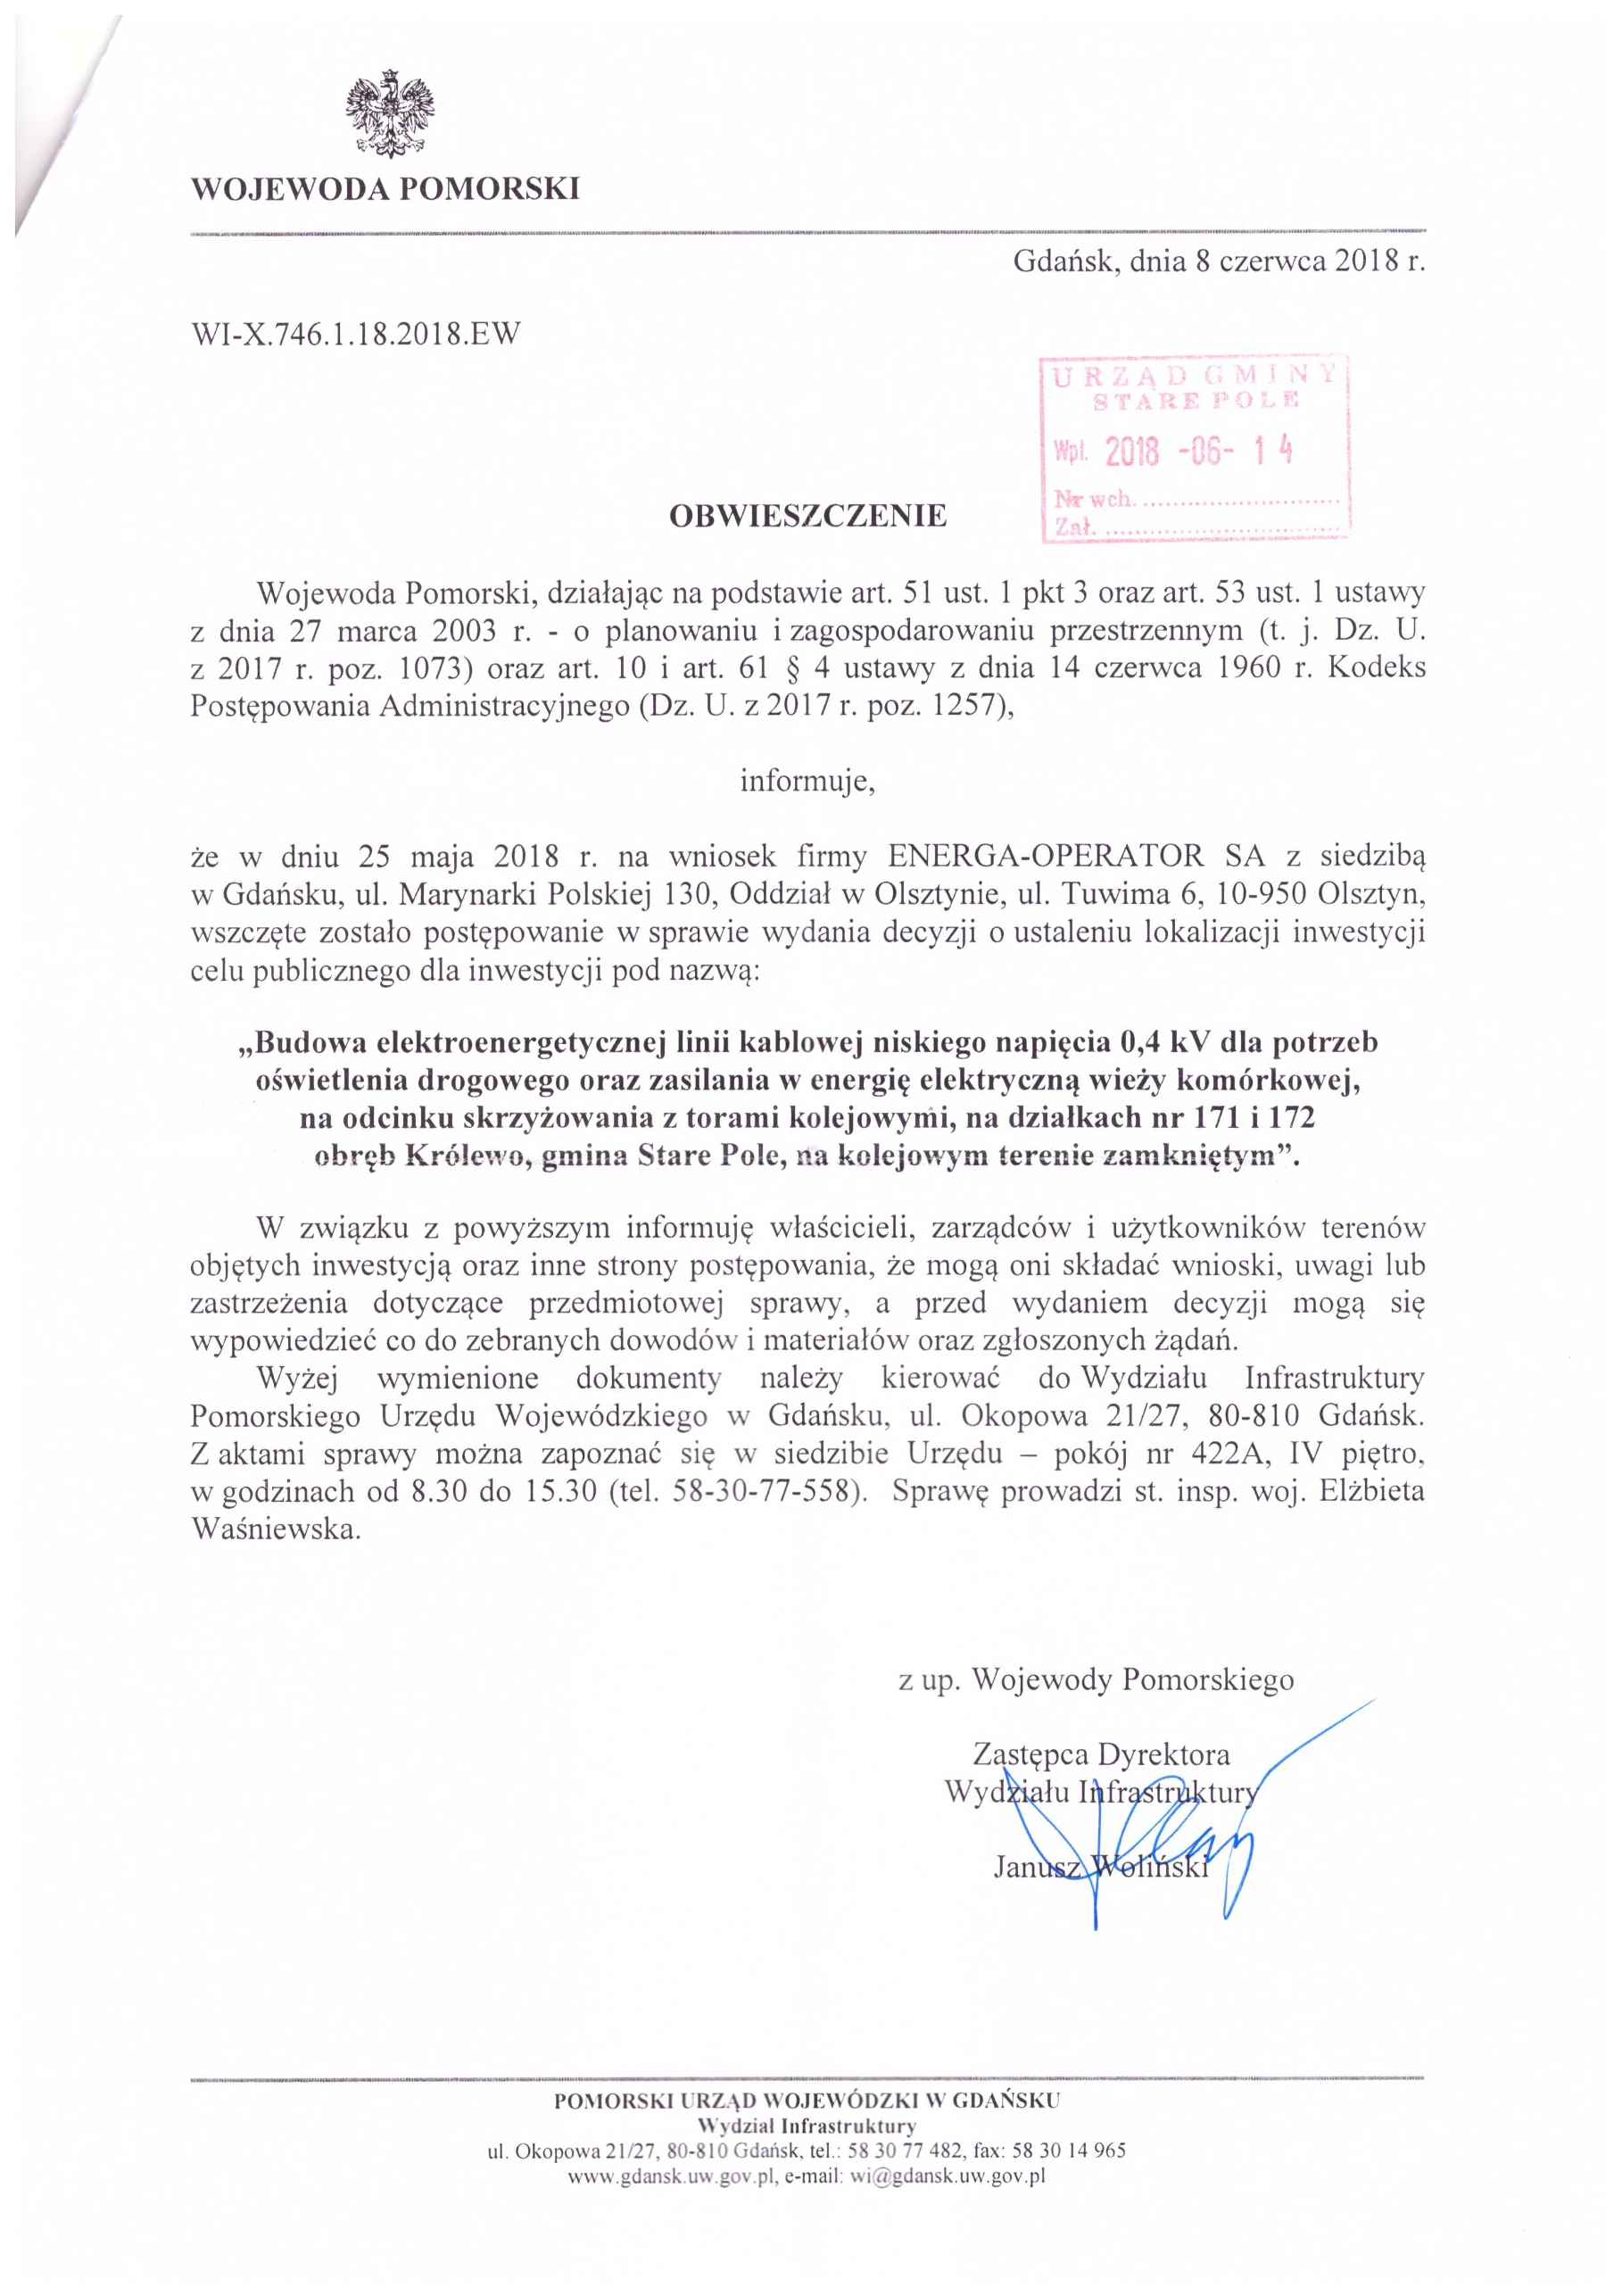 Obwieszczenie Wojewody Pomorskiego z dnia 8 czerwca 2018 r. o wszczęciu postępowania